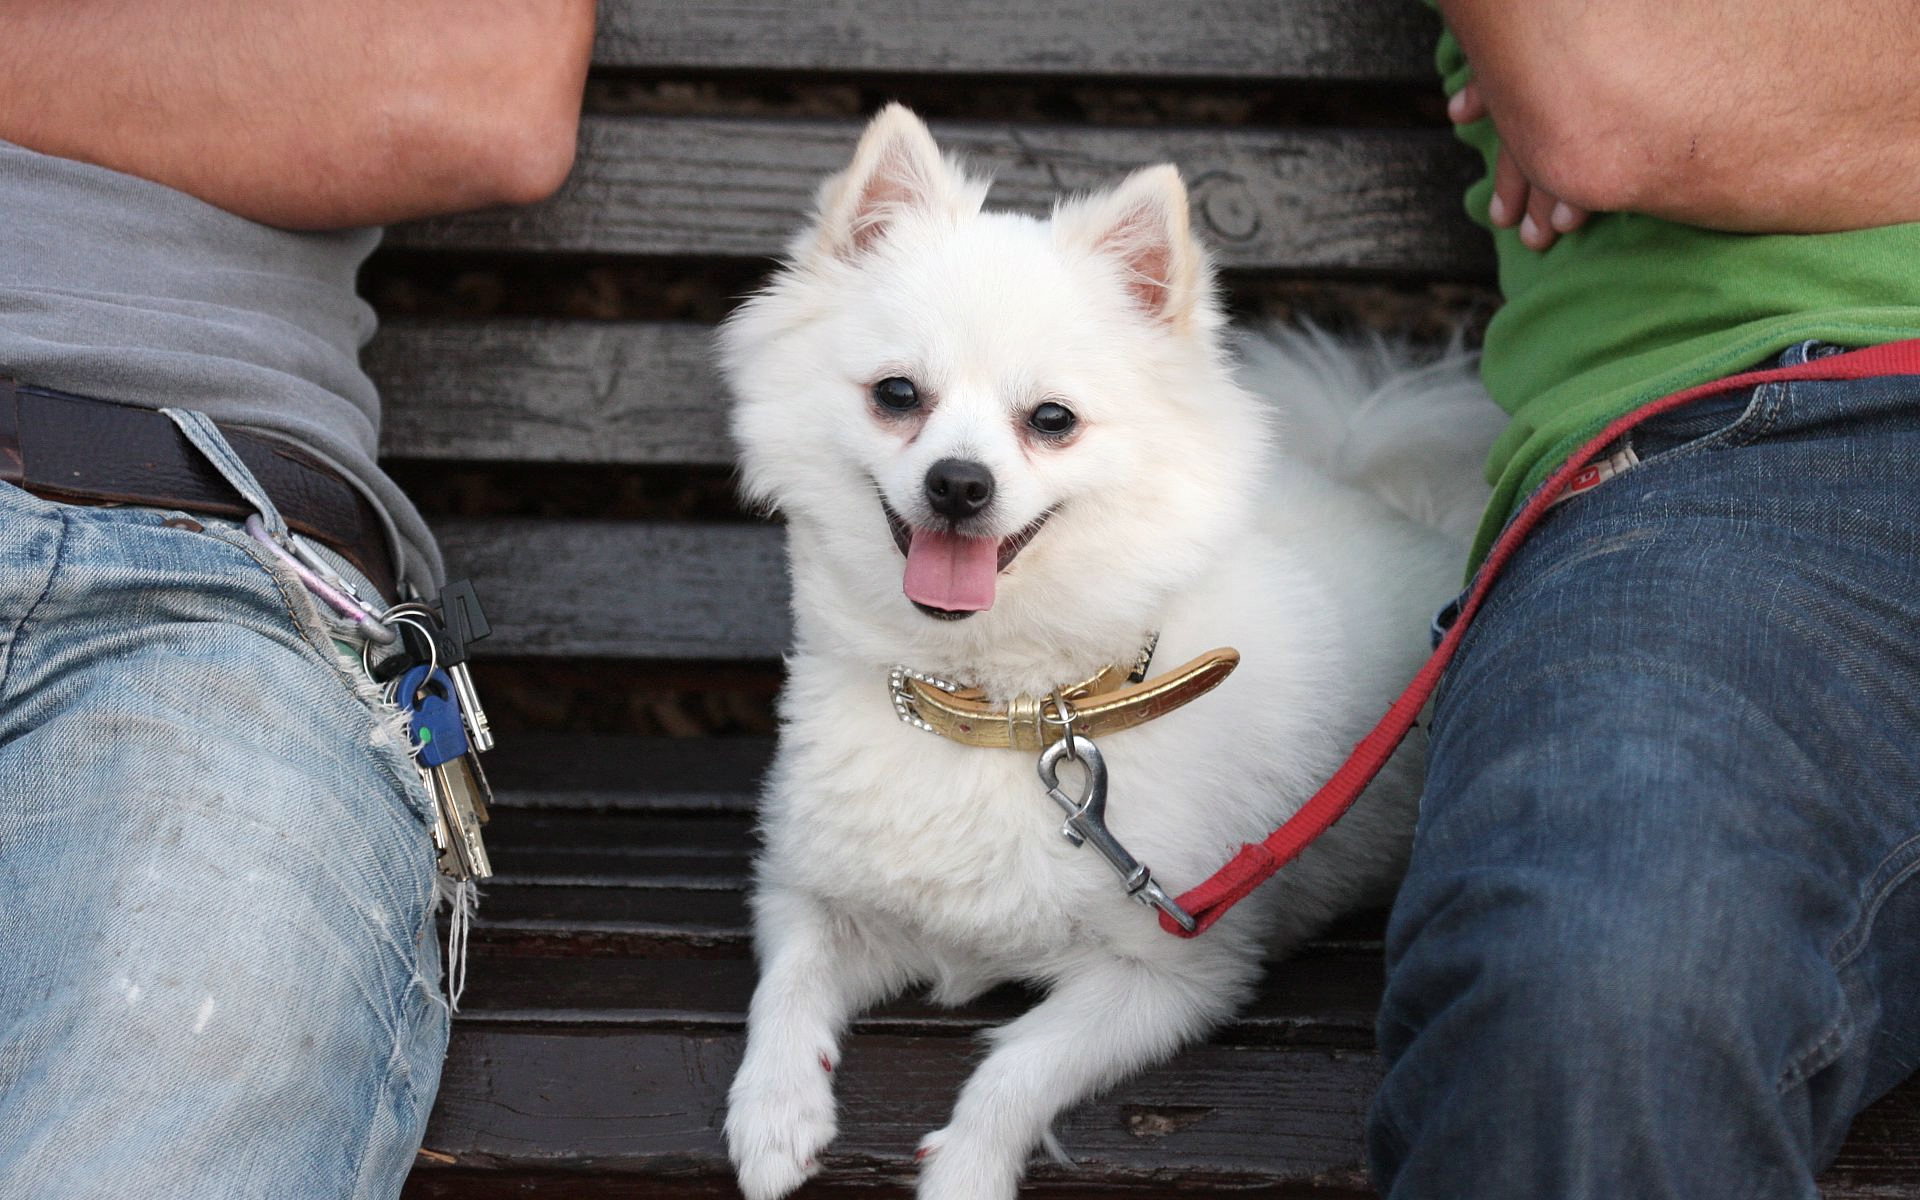 белая собачка, лавочка, поводок, колени, джинсы, домашние животные, white dog, shop, leash, knees, jeans, pets